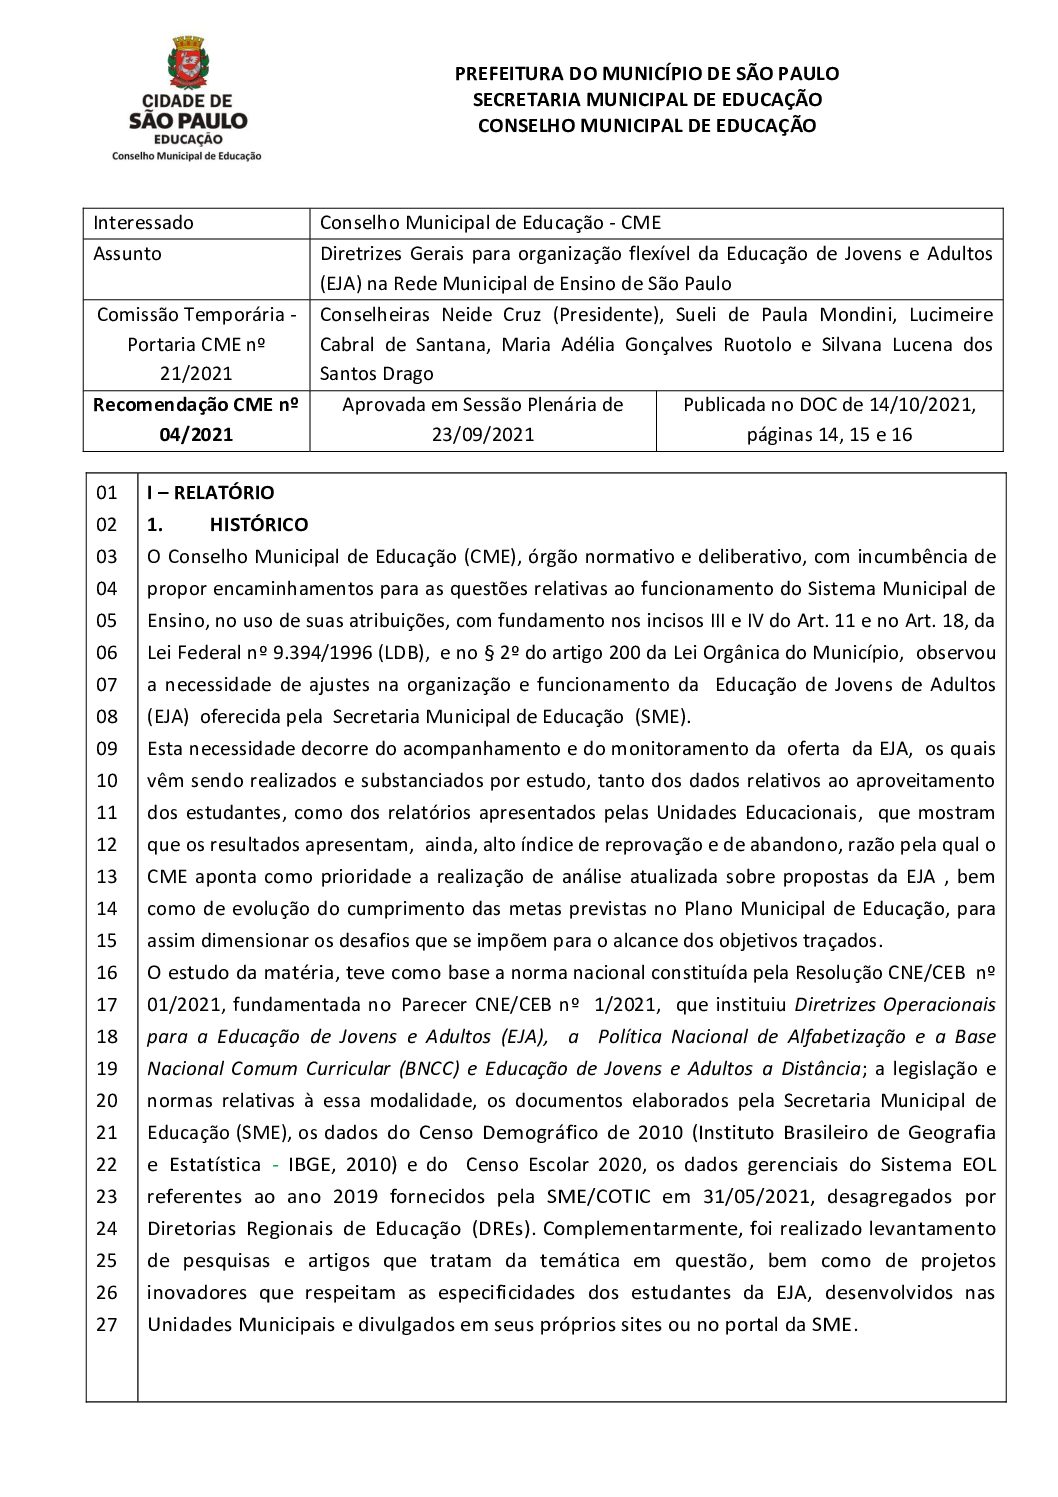 Recomendação CME nº 04/2021 - Diretrizes Gerais para organização flexível da Educação de Jovens e Adultos (EJA) na Rede Municipal de Ensino de São Paulo 